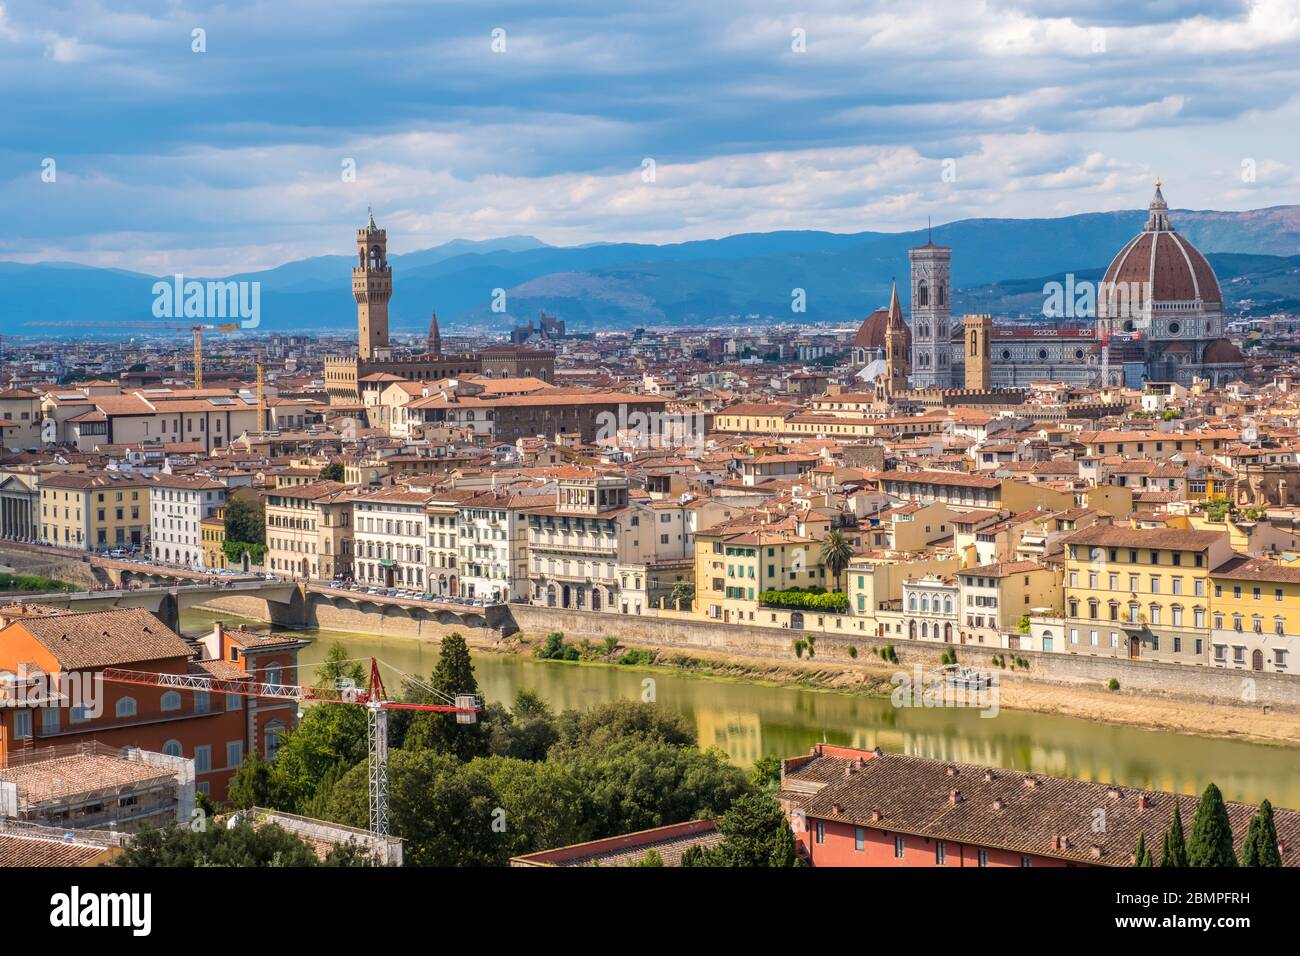 Florenz, Italien - 16. August 2019: Blick auf die Skyline von Florenz mit Ponte Vecchio und Santa Maria del Fiore Duomo, Toskana, Italien Stockfoto